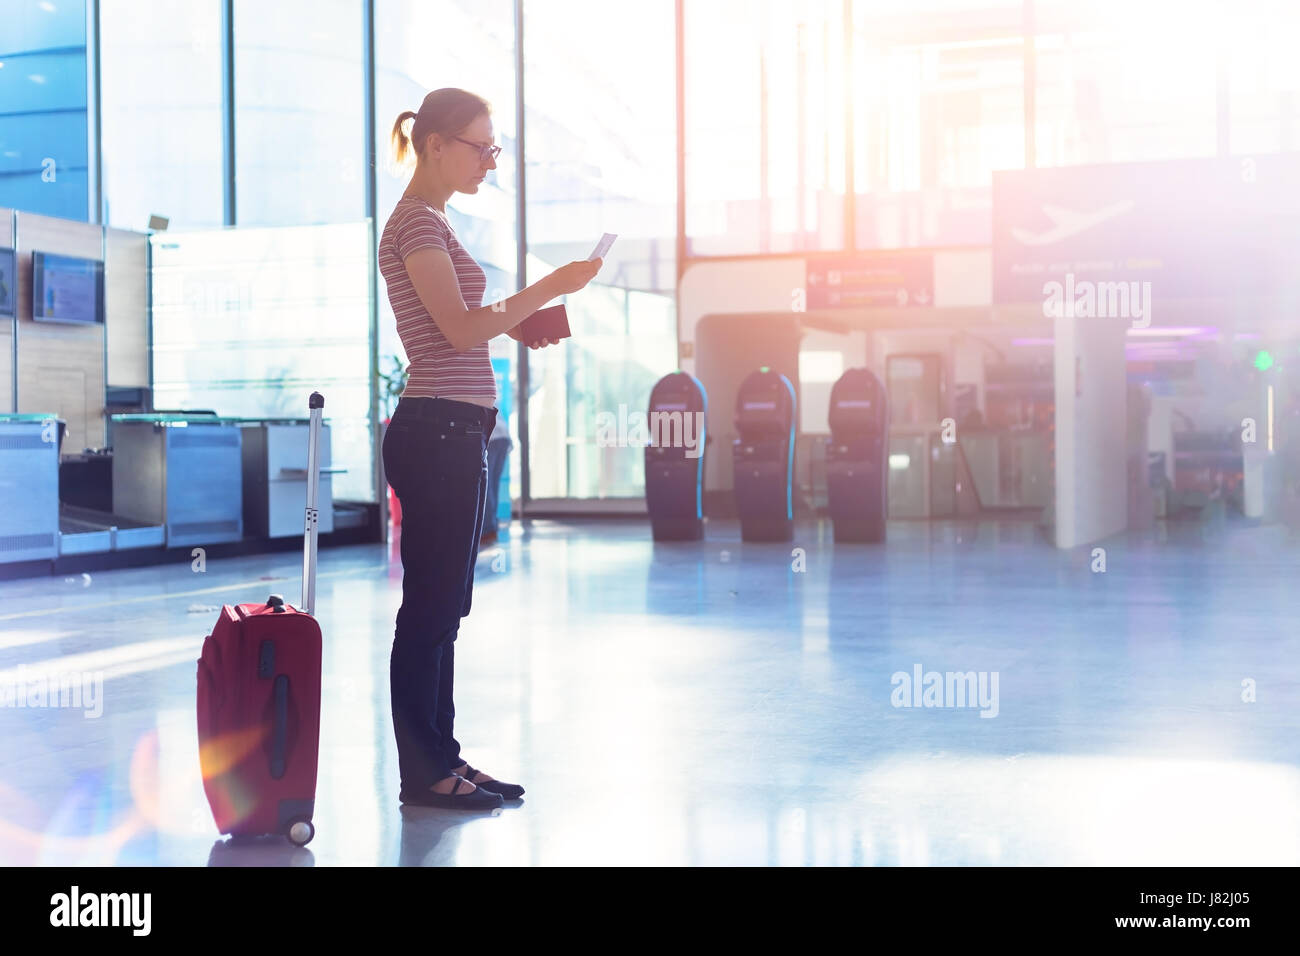 Personne lisant embarquement et holding passport en main dans un terminal de l'aéroport moderne salle d'enregistrement, les documents de voyage Banque D'Images